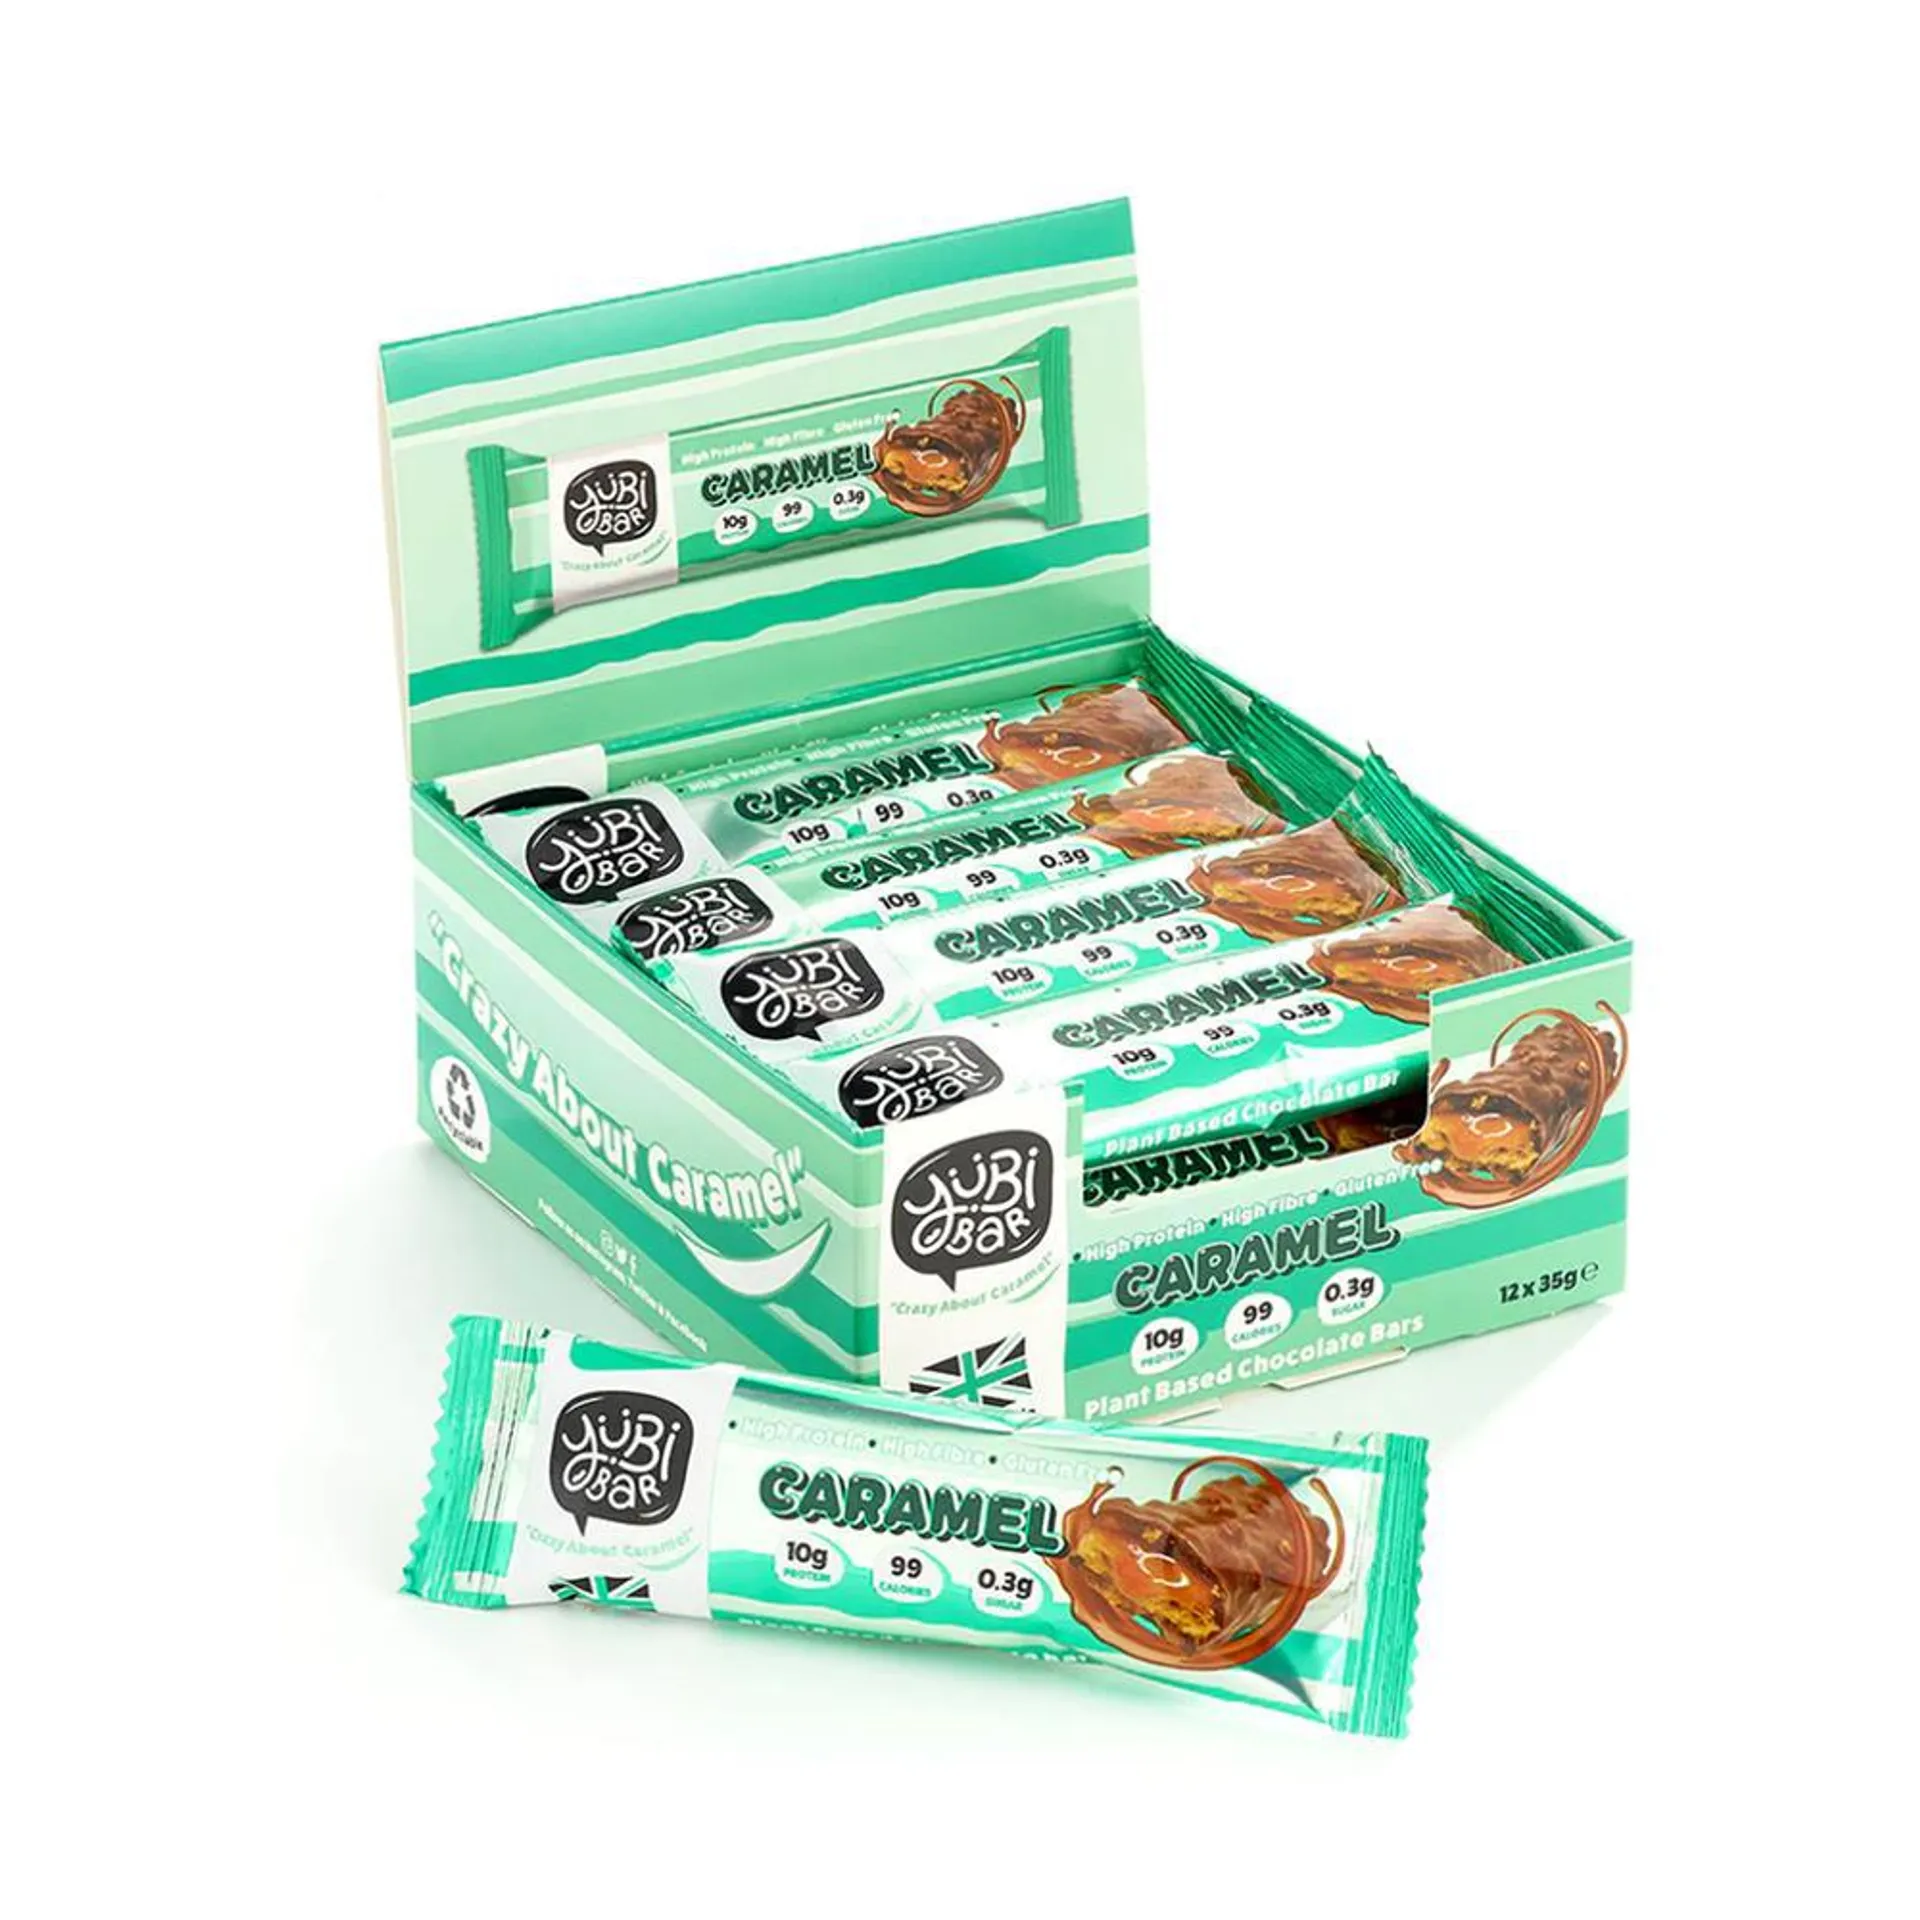 Yubi Bar: Plant Based Chocolate Bar 12 Pack - Caramel